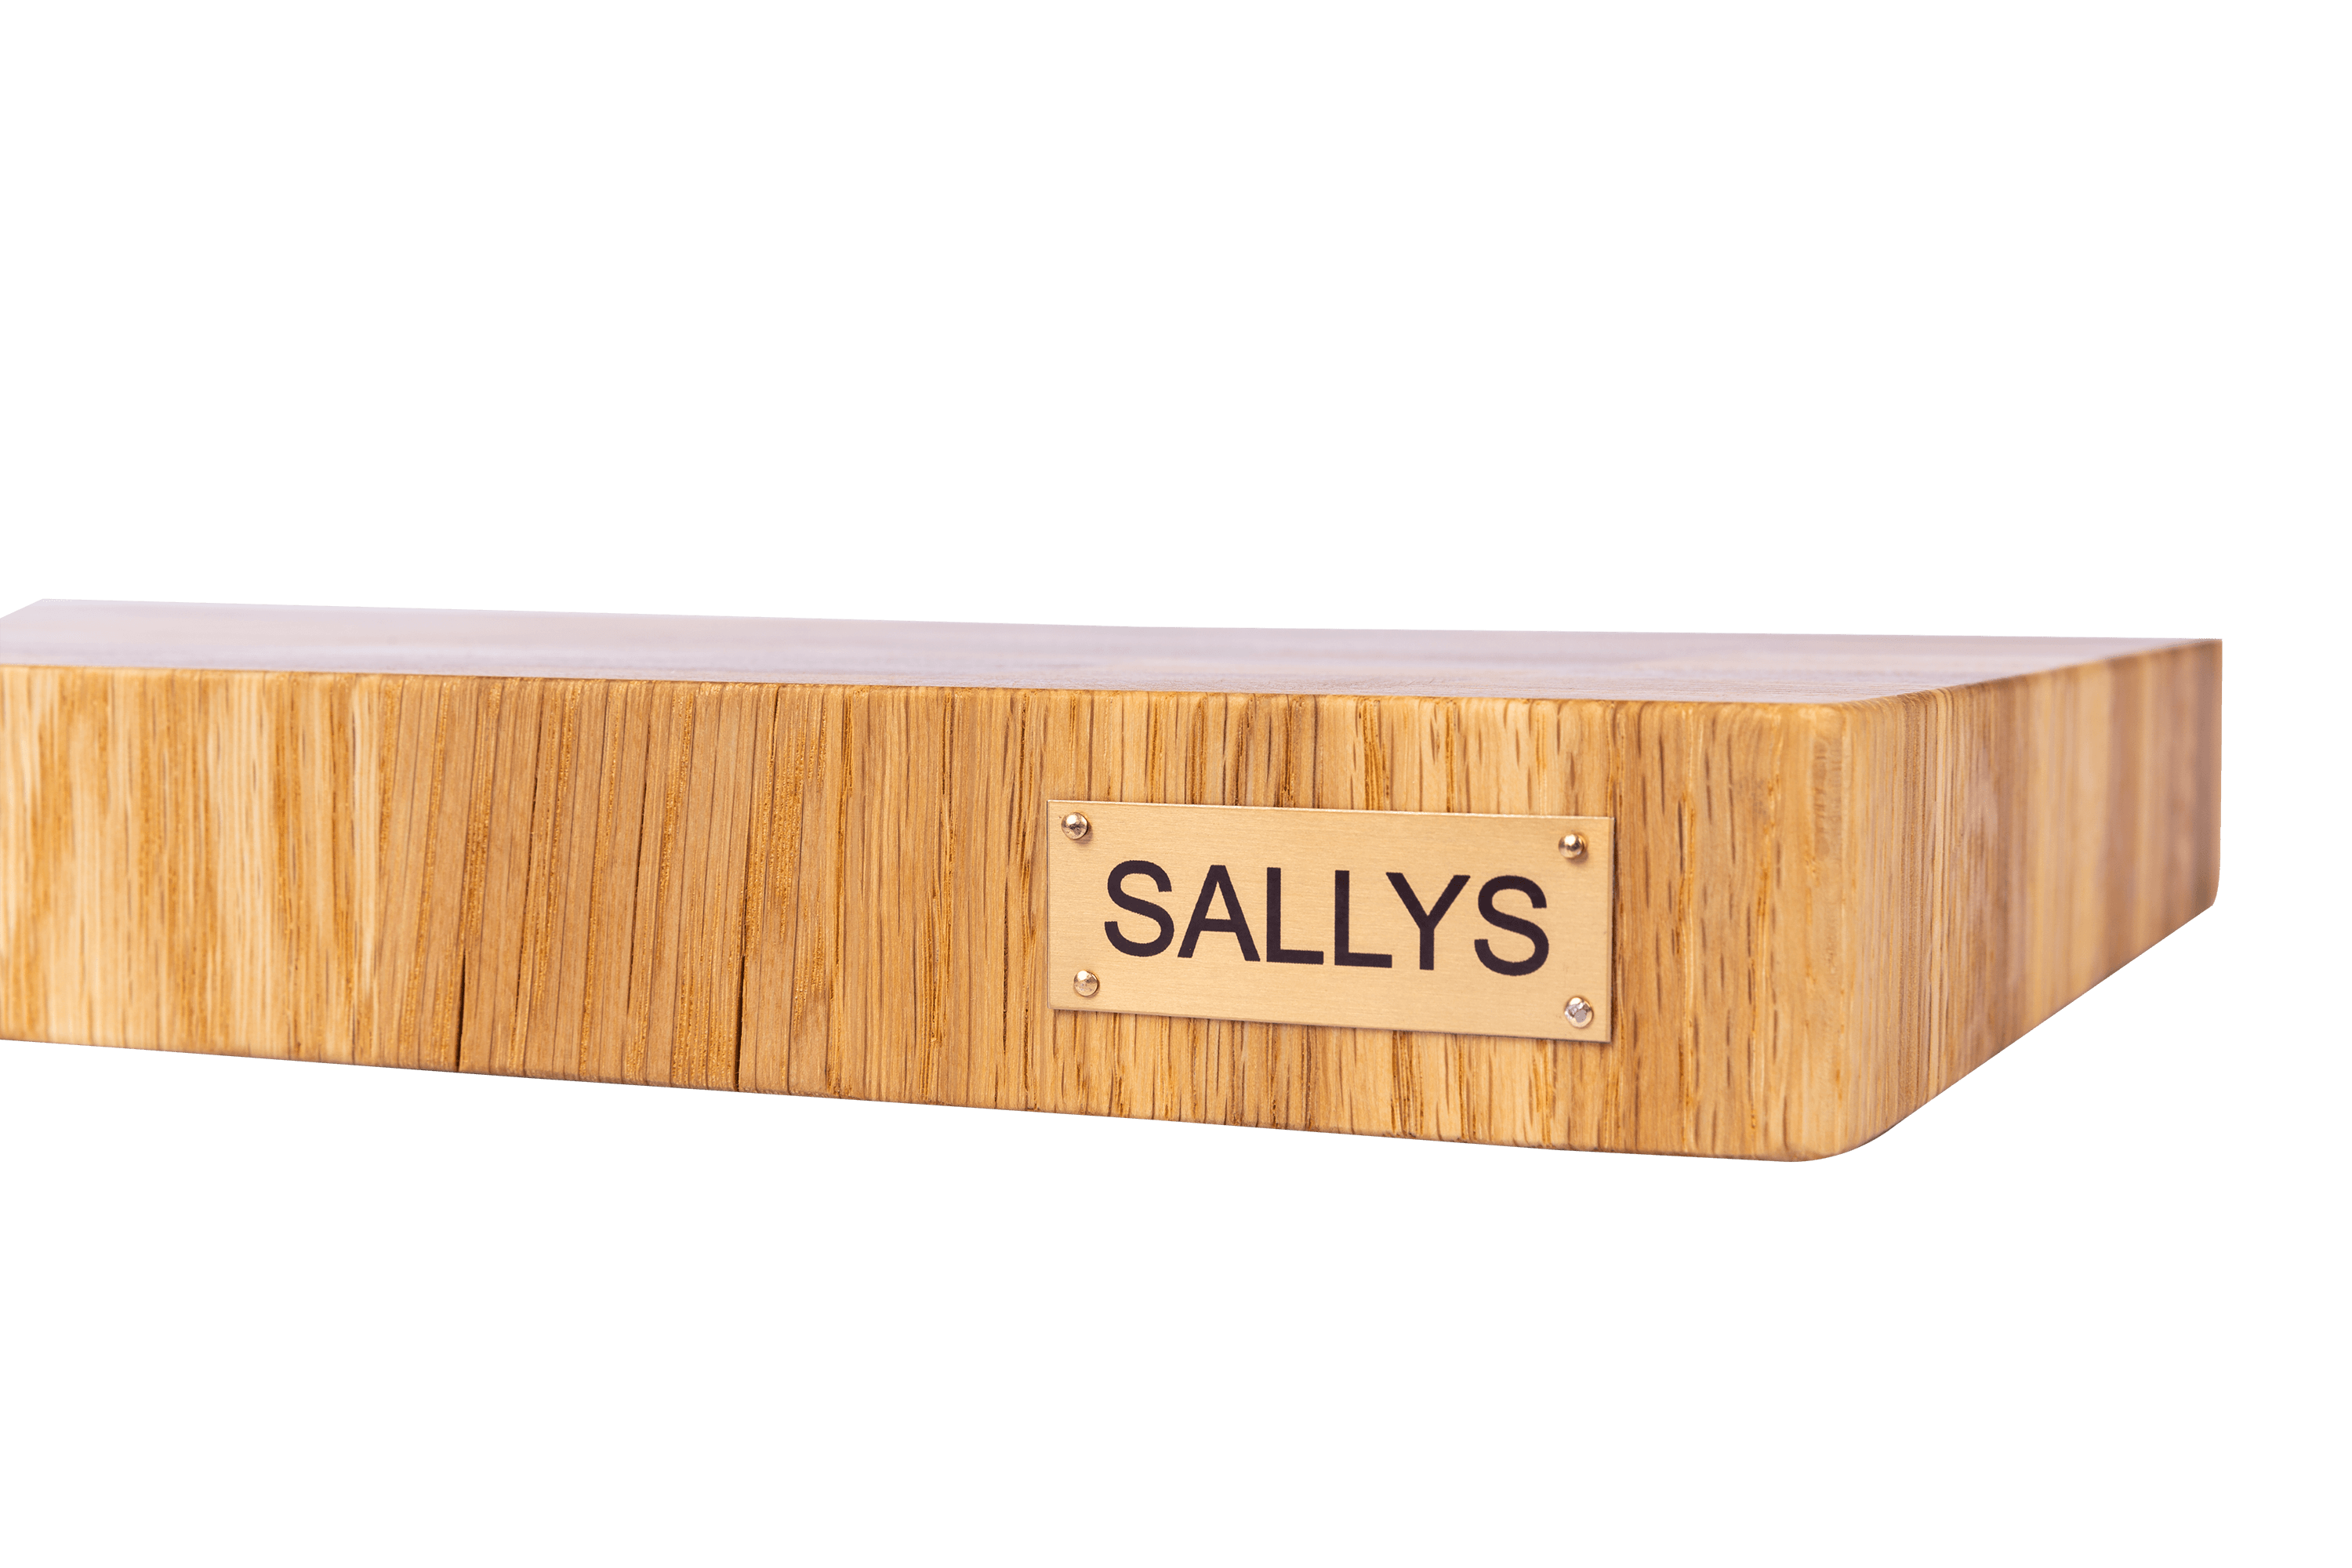 Das Sallys-Logo auf dem hellen Schneidebrett